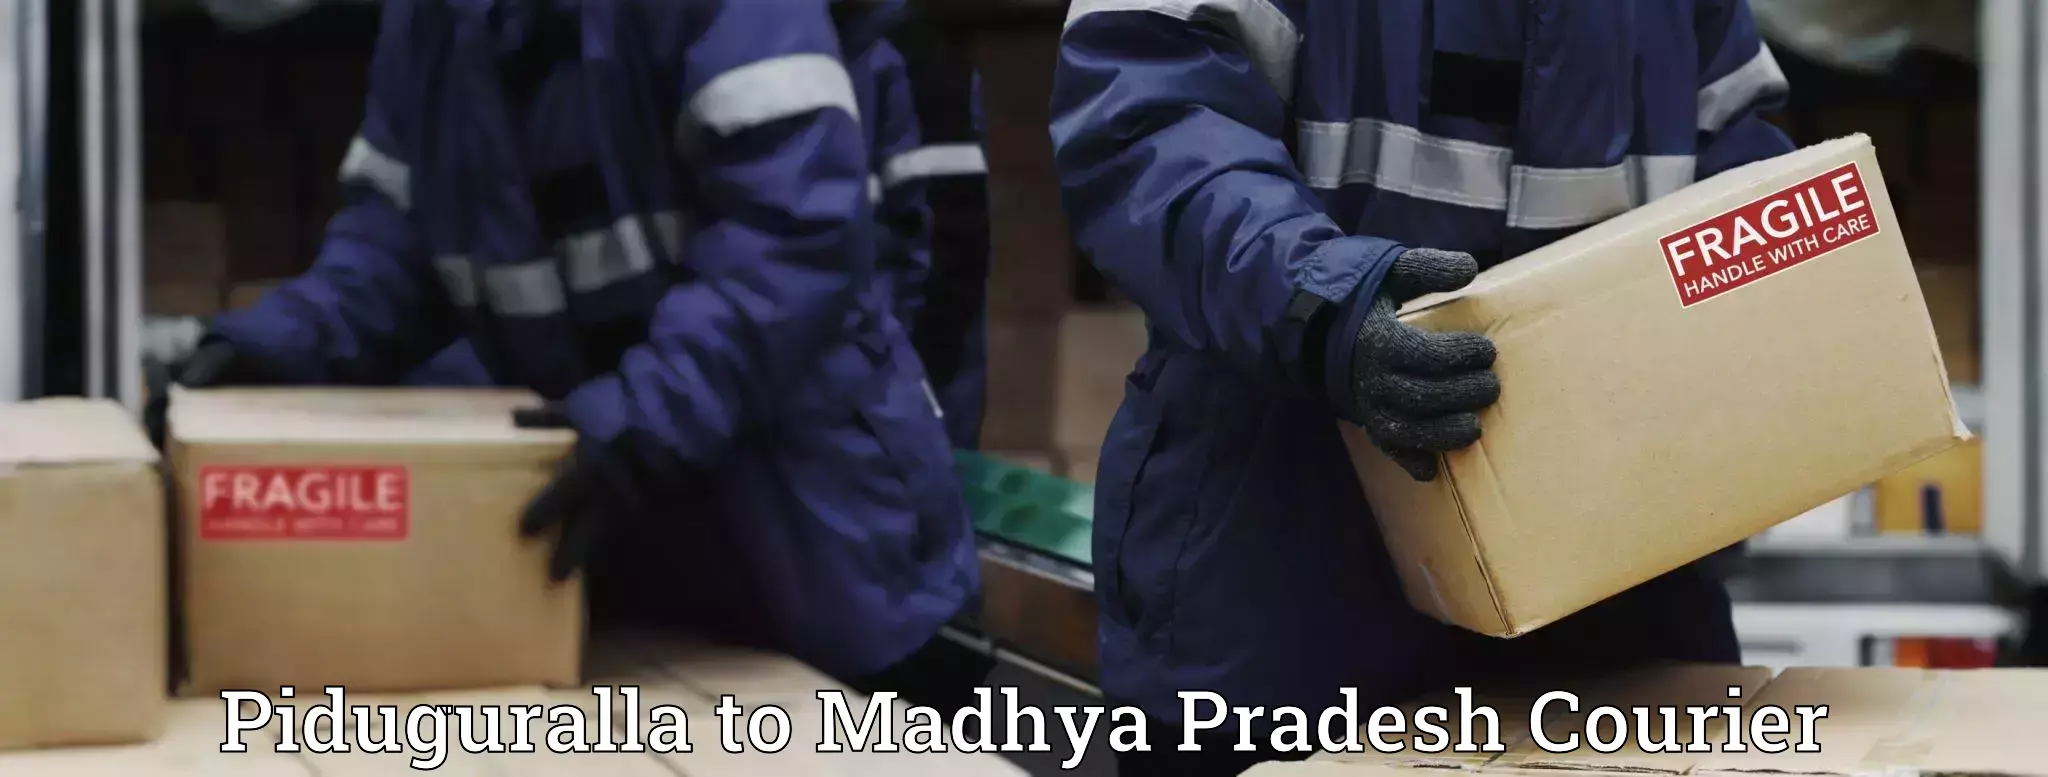 Door-to-door freight service Piduguralla to Madhya Pradesh